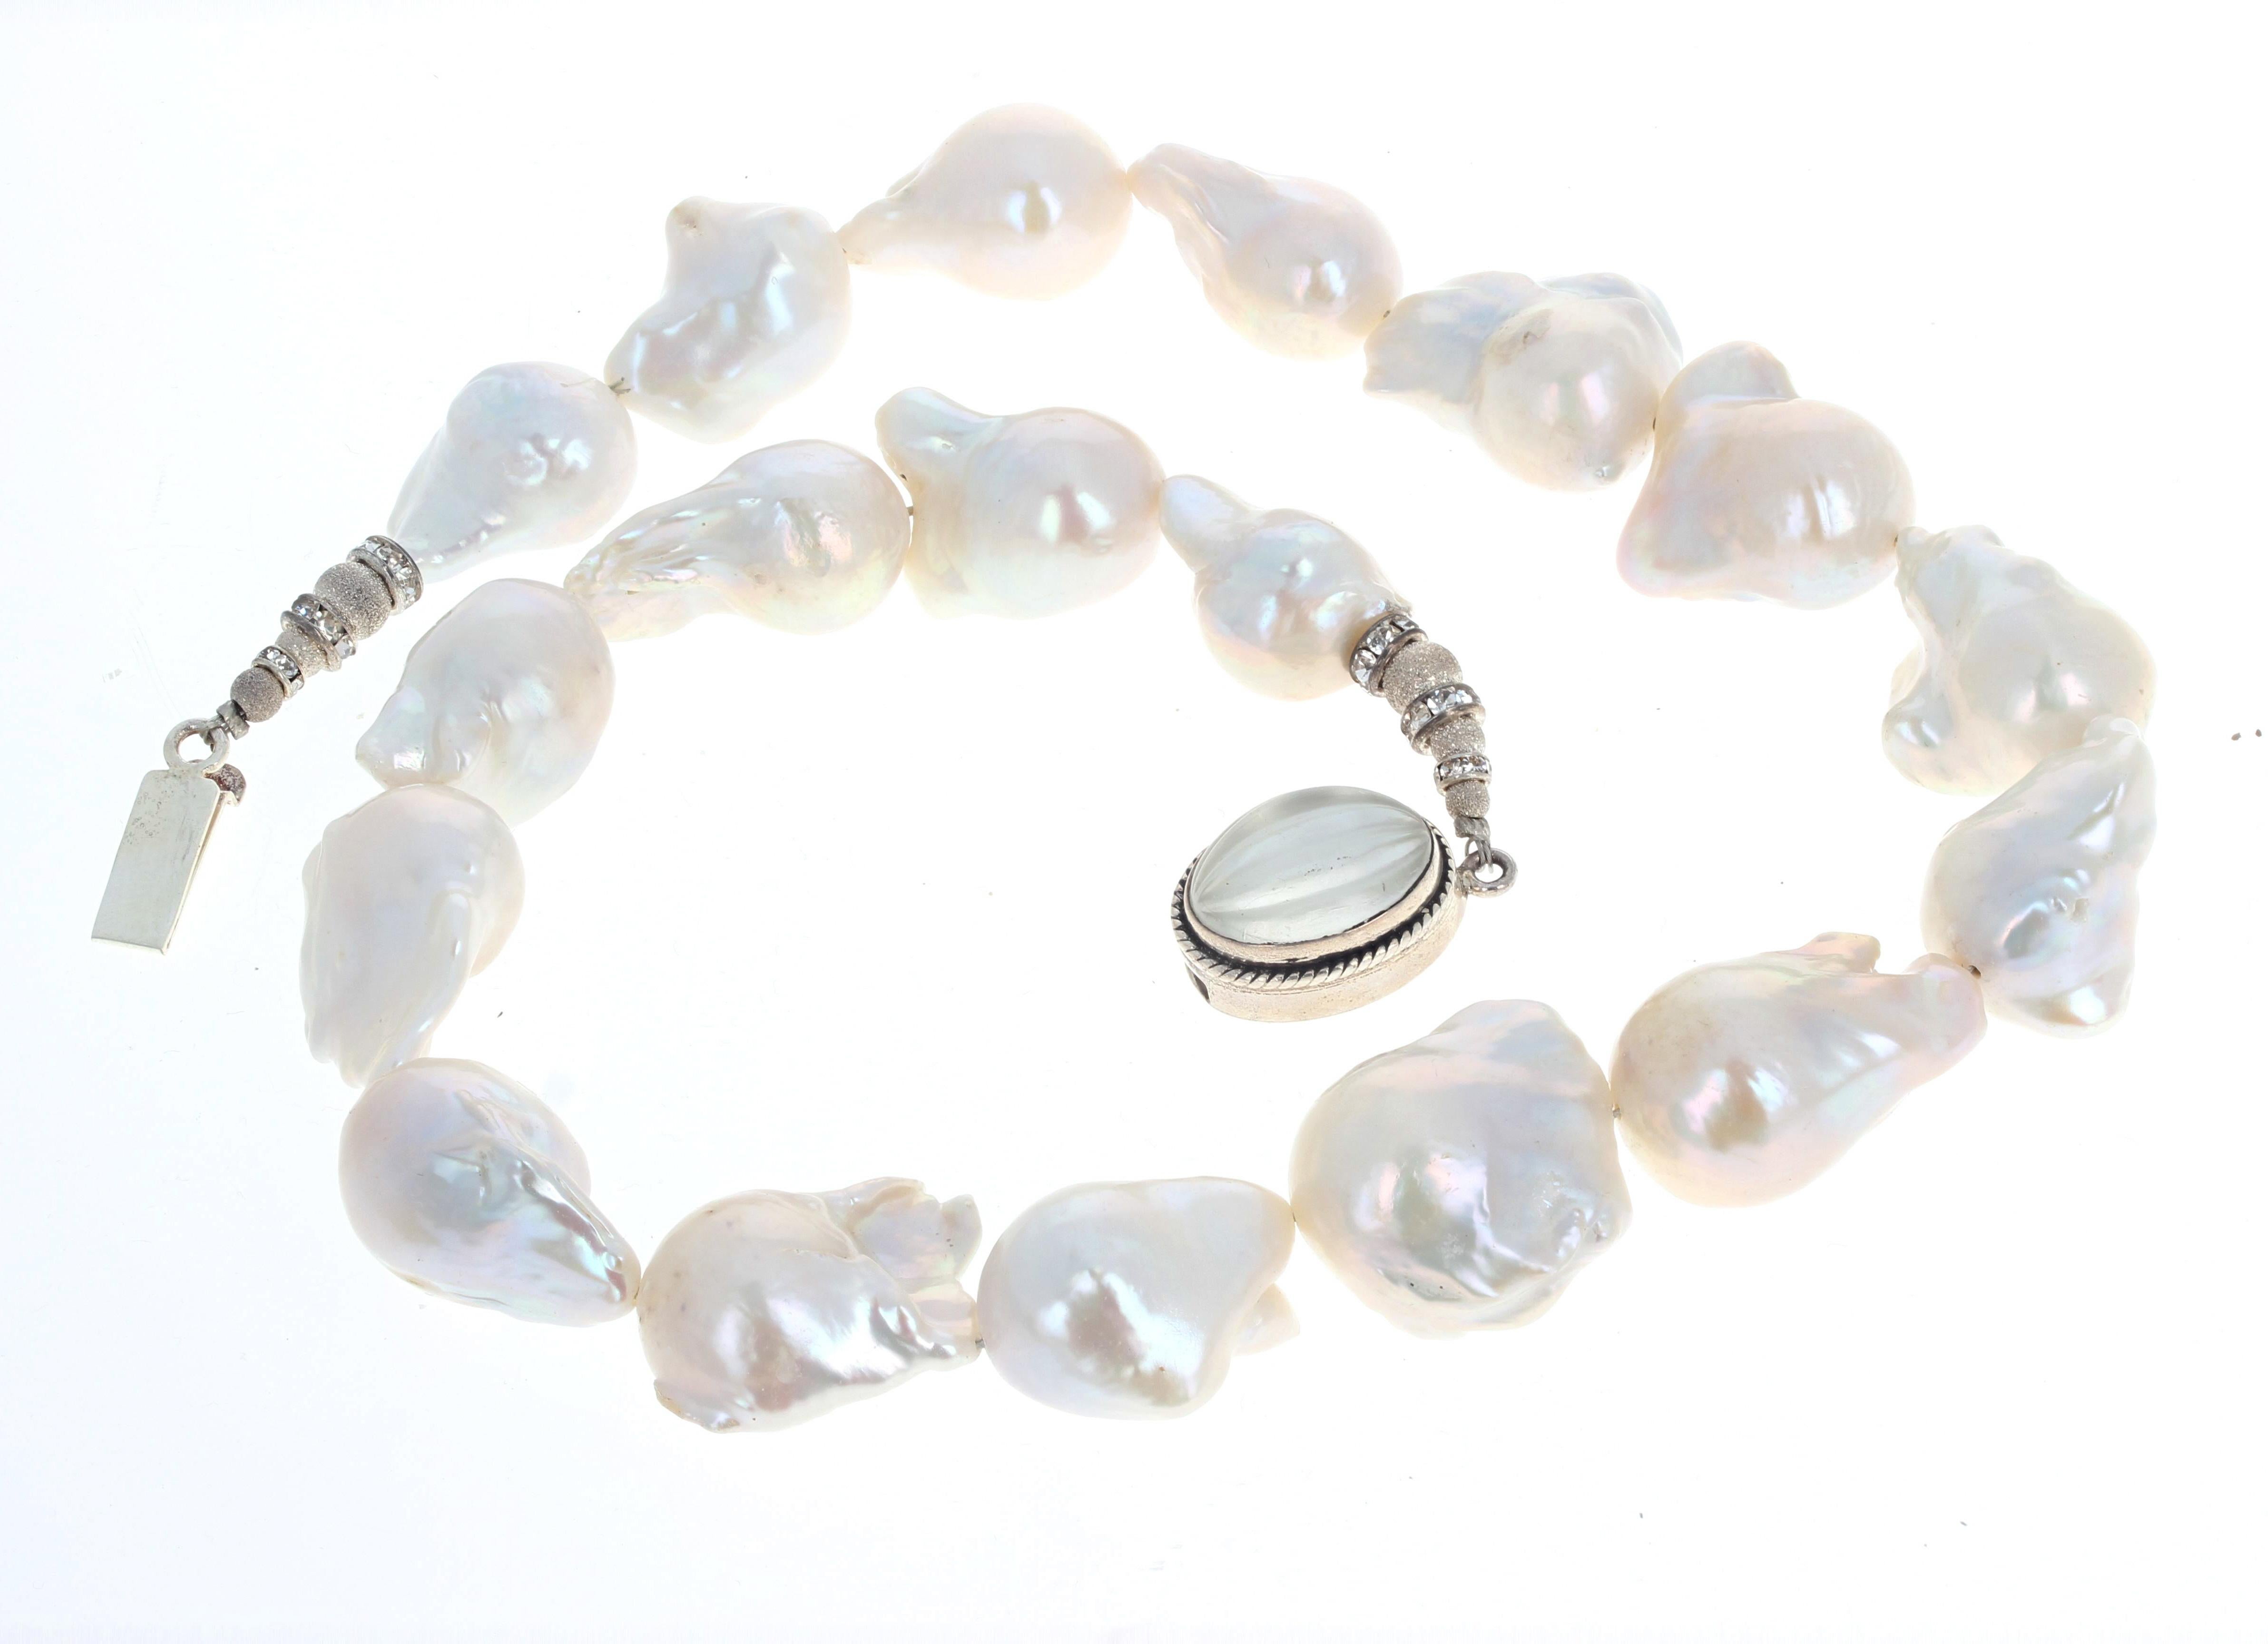 Weiße natürliche HUGE Barockperlen in dieser schönen 20 Zoll langen Halskette.  Die größten Perlen sind etwa 24 mm x 21 mm groß.  Der silberne Verschluss ist ein einfach zu bedienender Einschubverschluss.  Absolut wunderschön um Ihren Hals.  